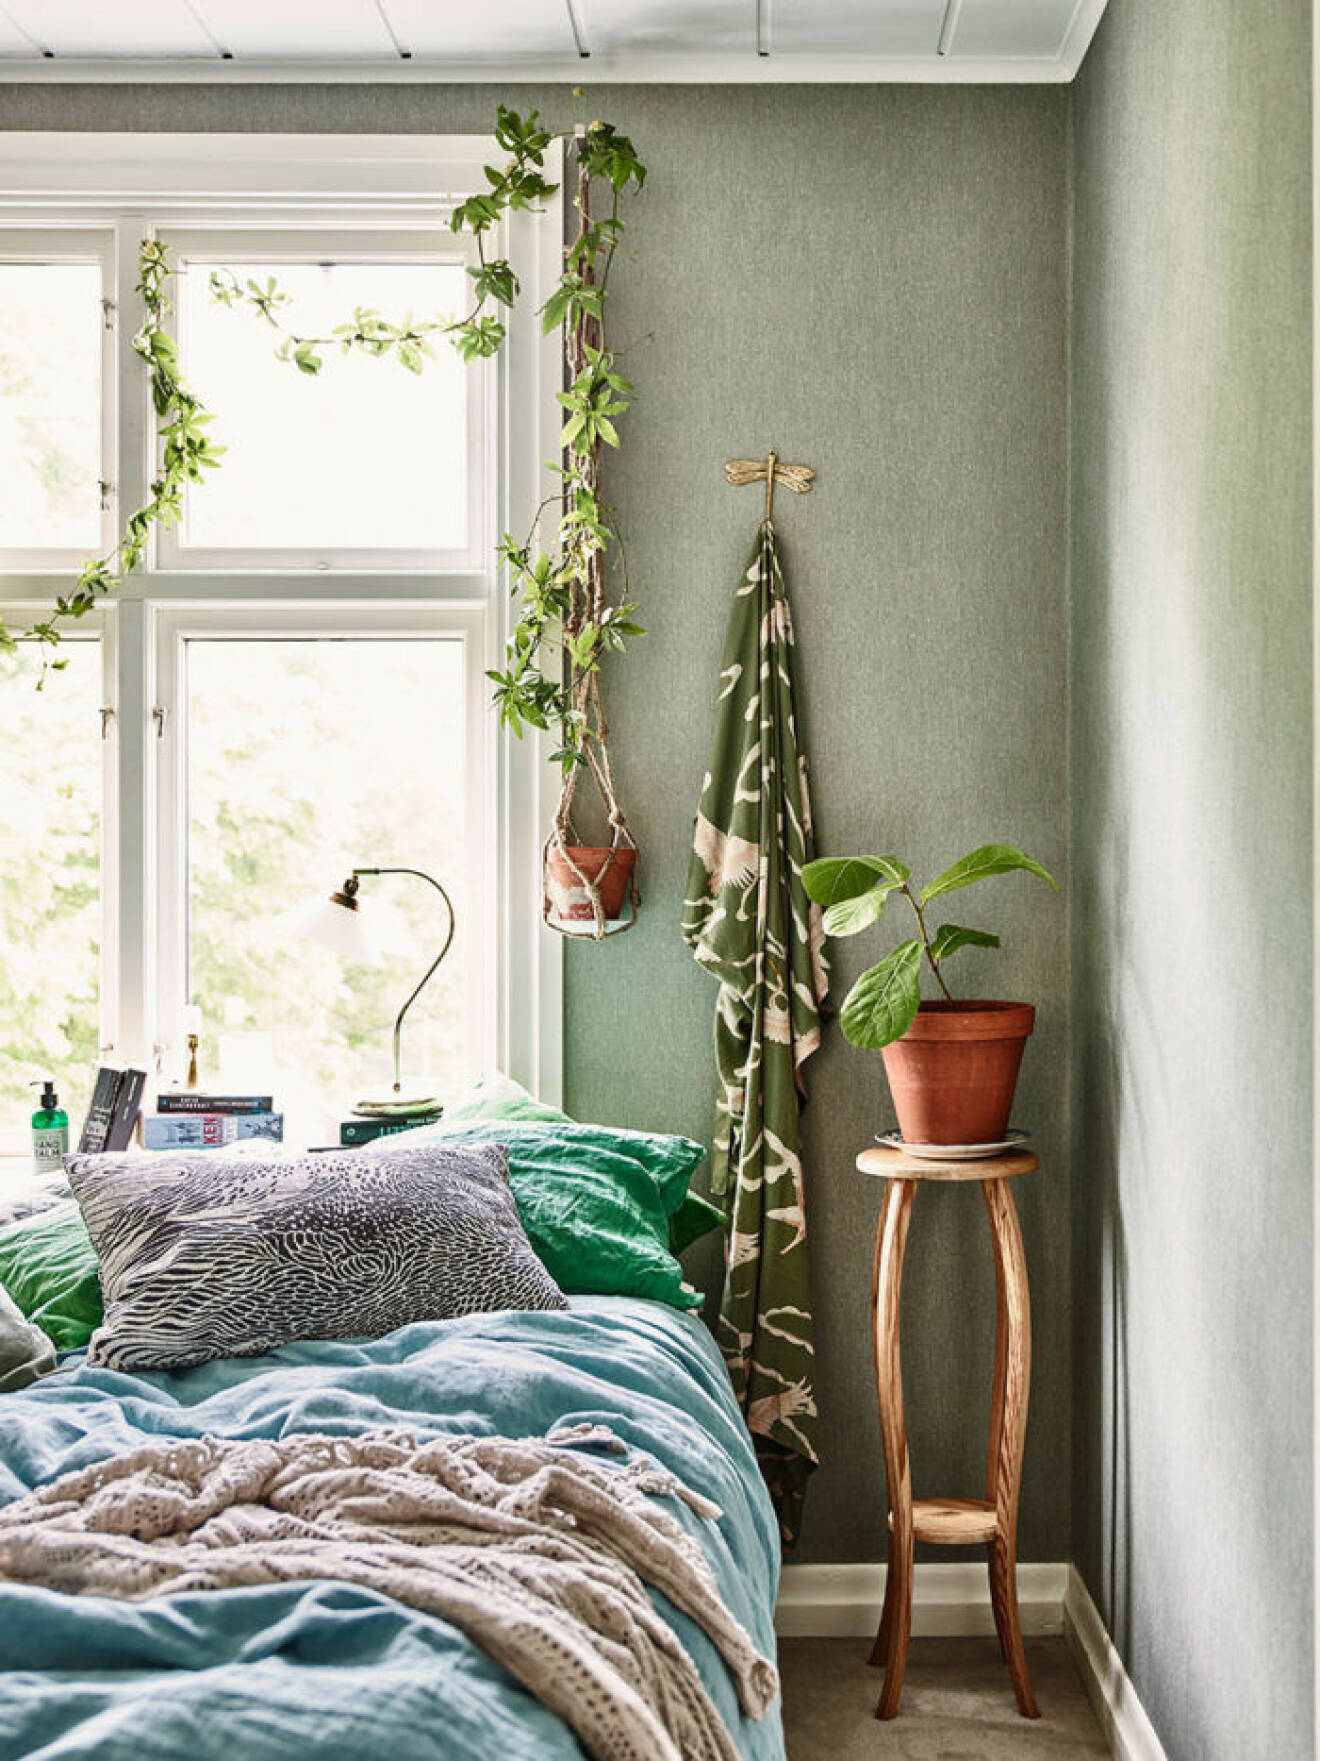 krickelin_sovrum_green_bedroom_Foto_Andrea_Papini